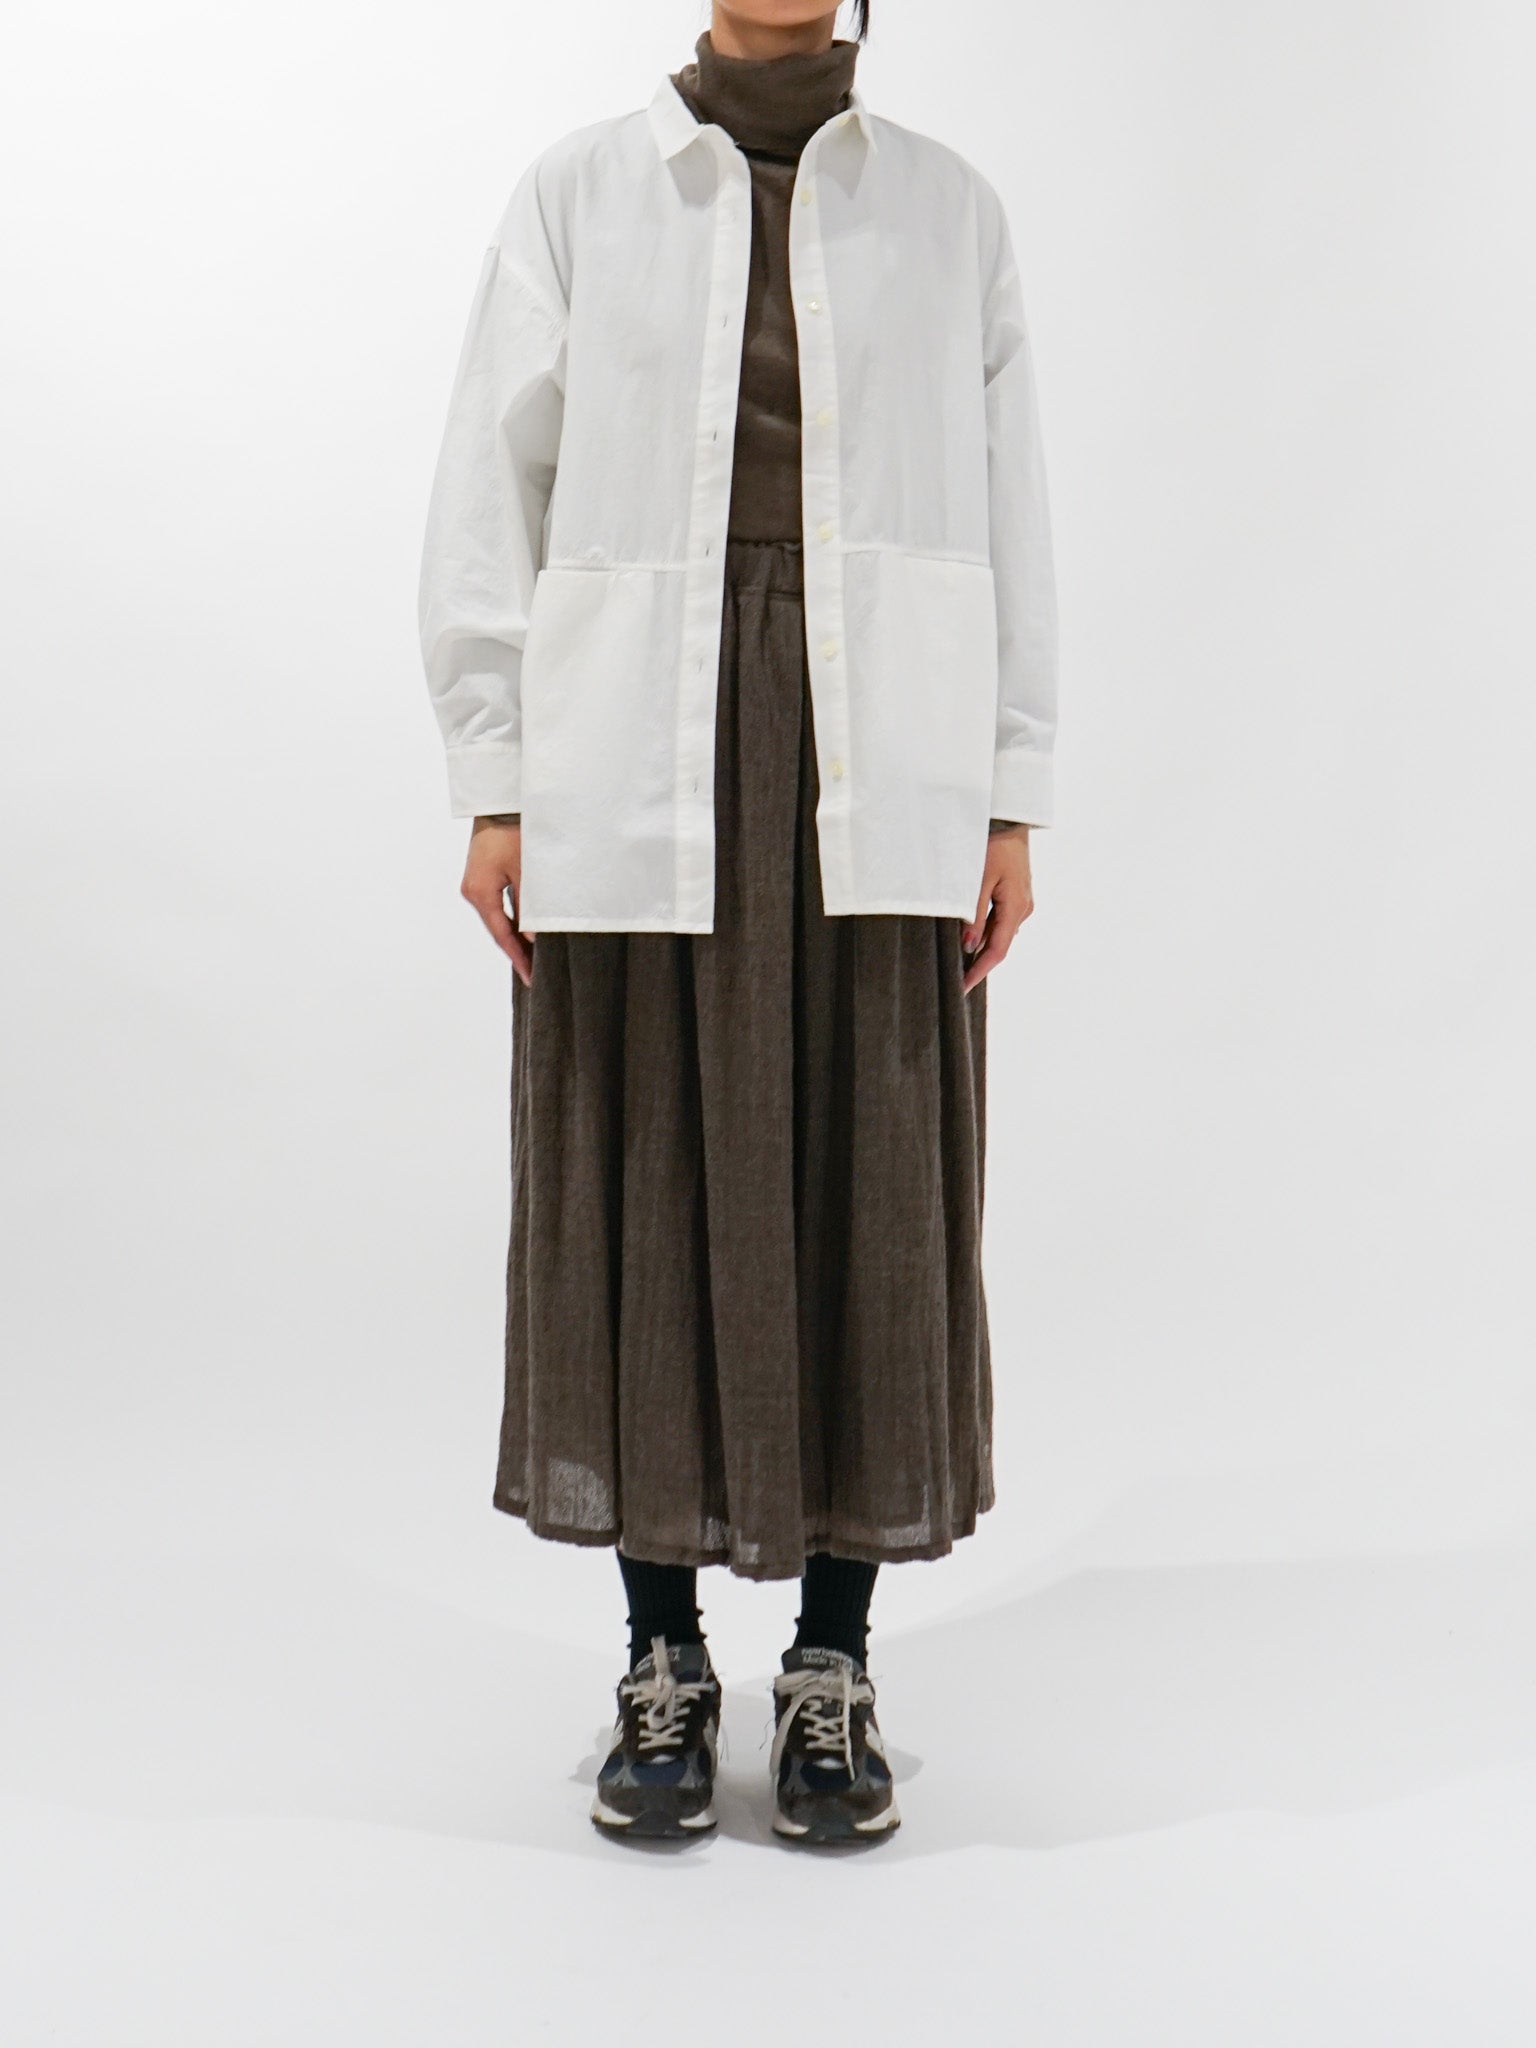 Namu Shop - ICHI Wool Skirt - Brown